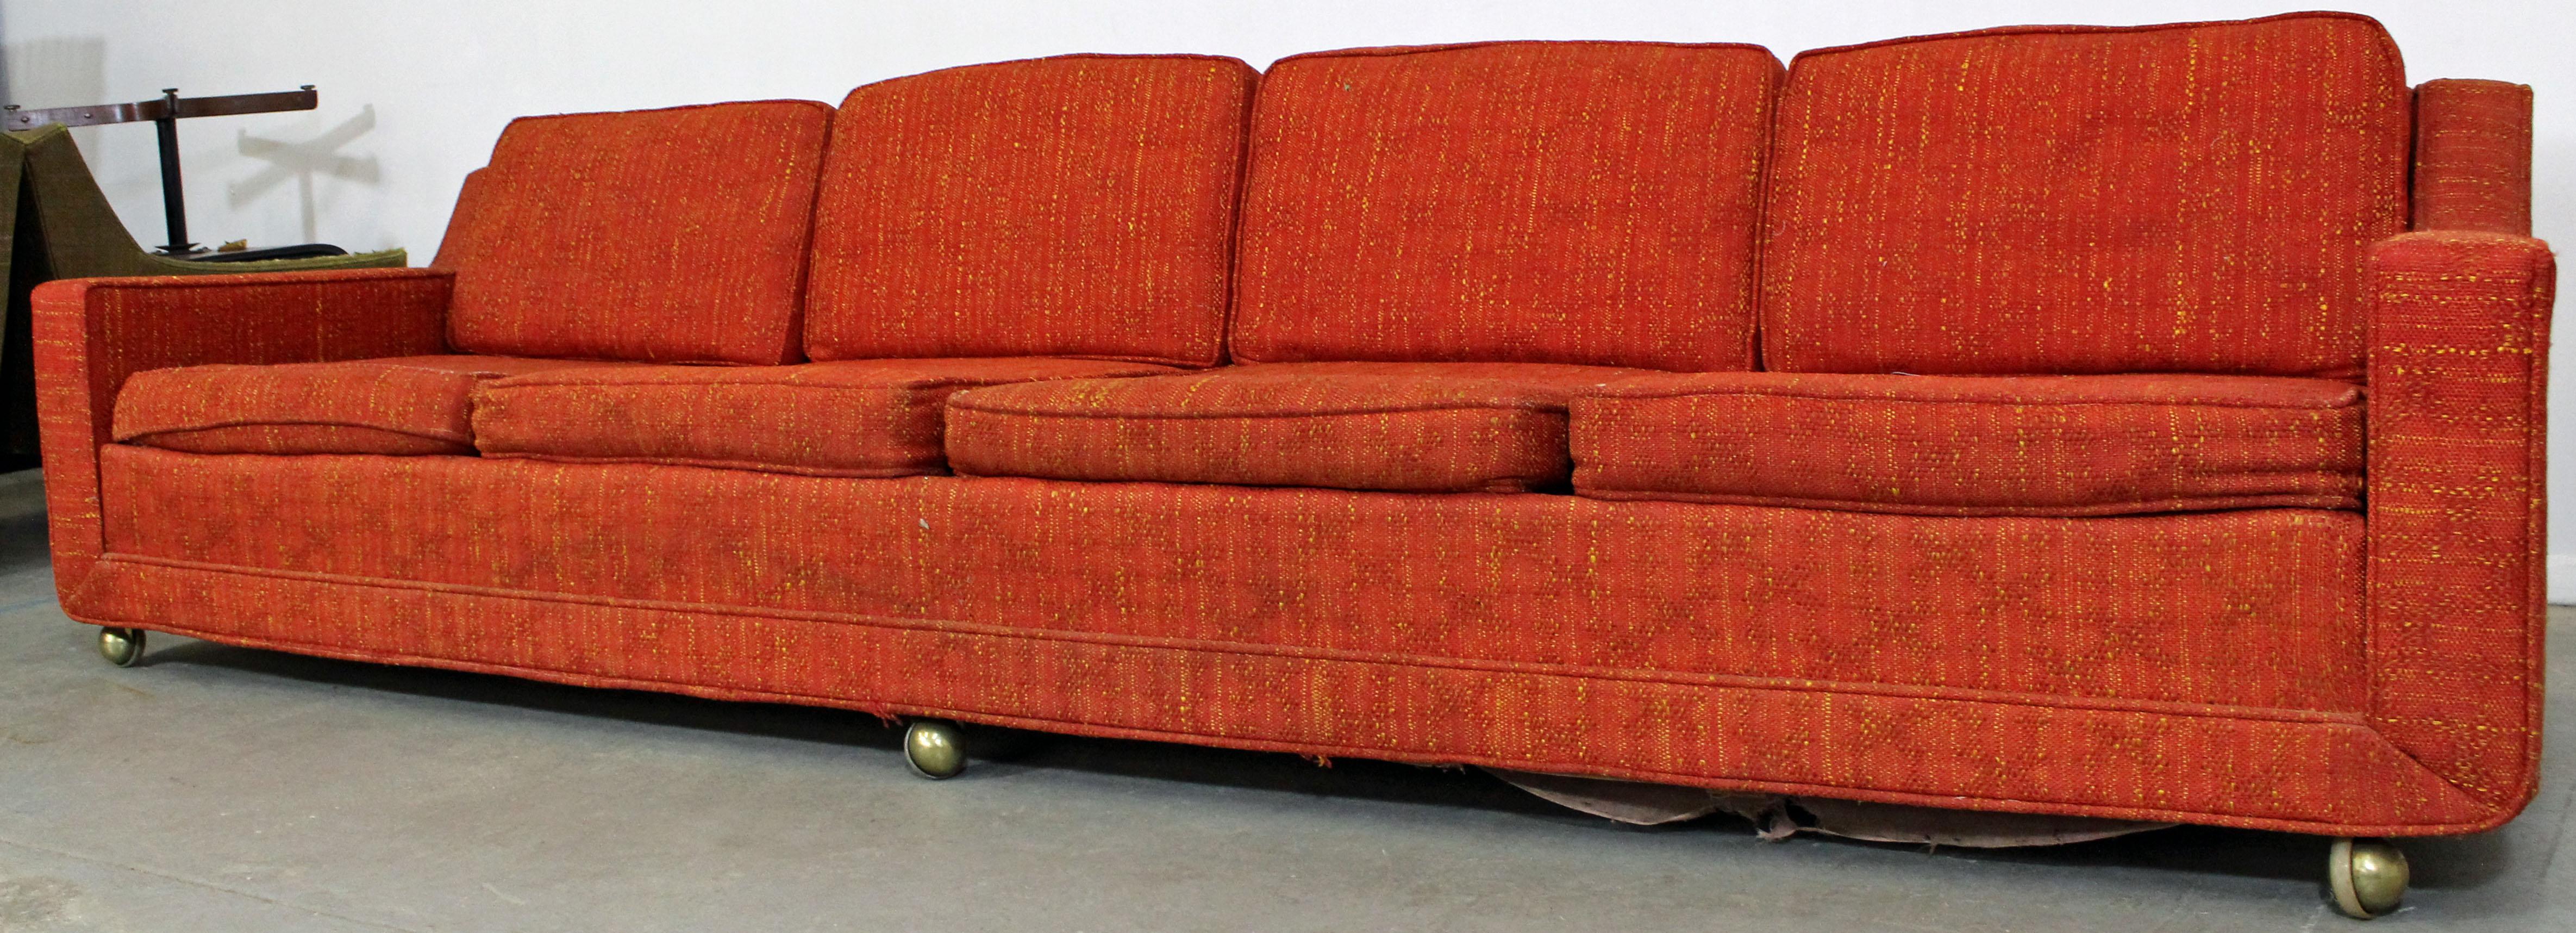 Mid-Century Modern Elongated Sofa on Wheels by Kroehler (Moderne der Mitte des Jahrhunderts)